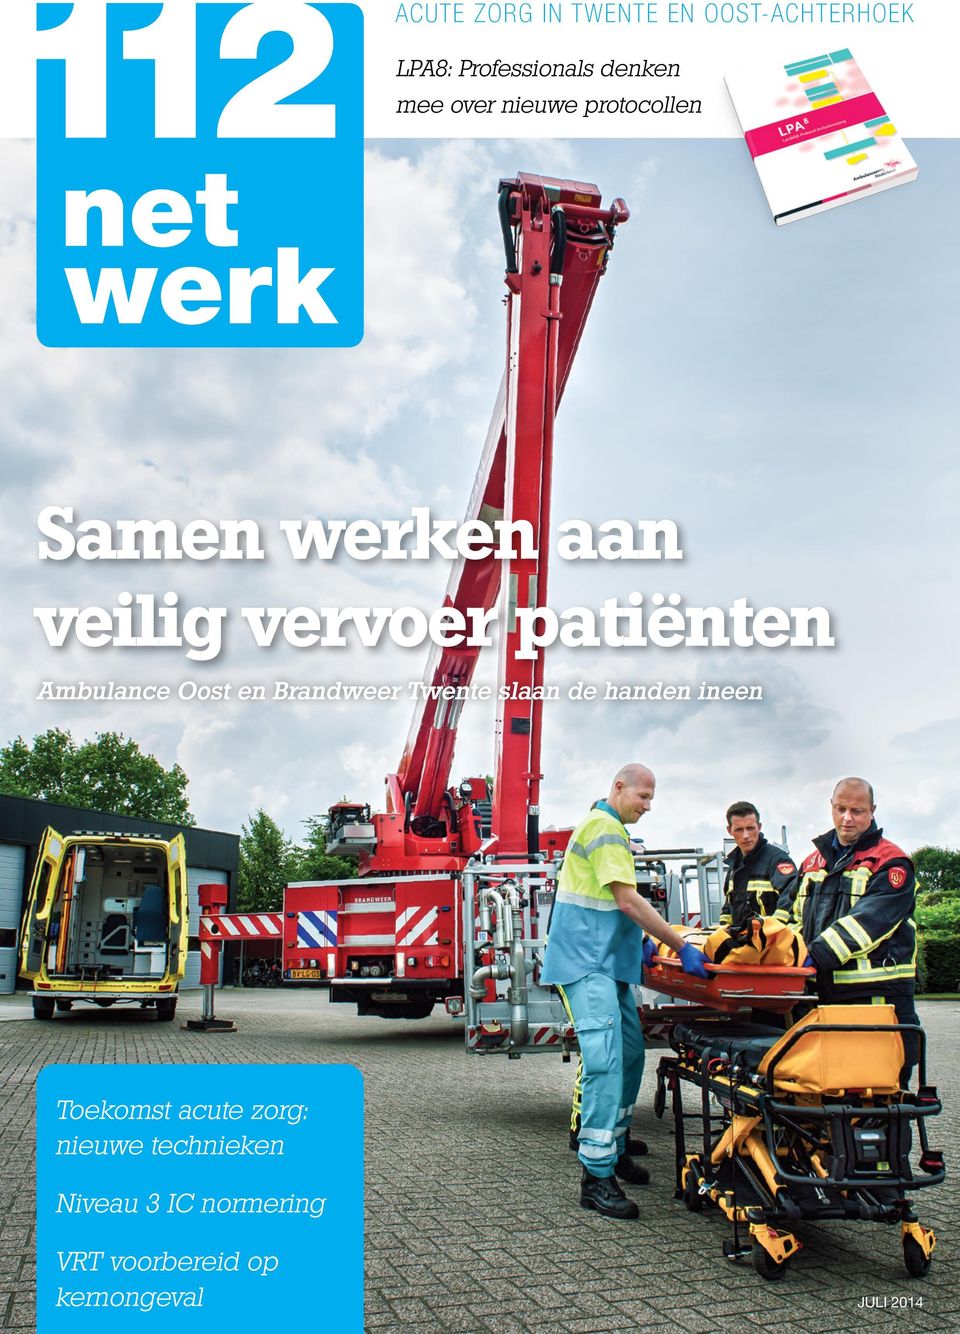 Ambulance Oost en Brandweer Twente slaan de handen ineen Toekomst acute